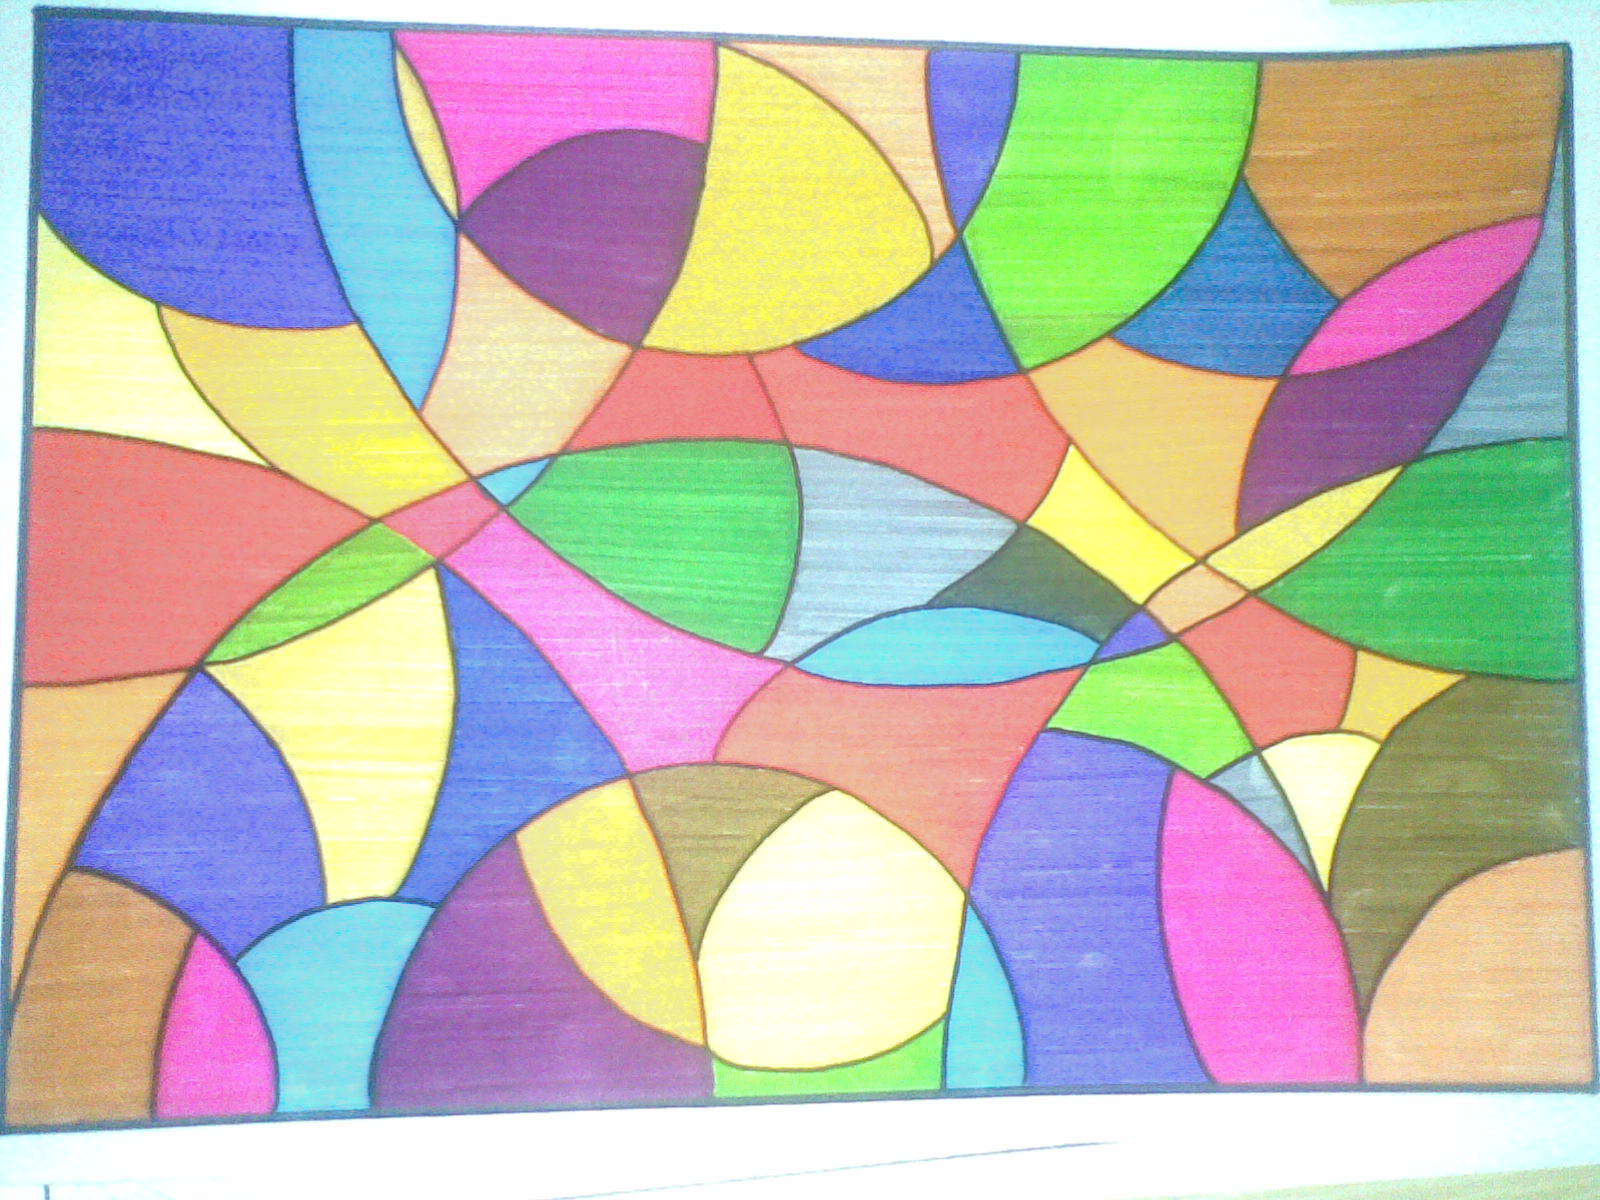 Wallpaper Gradasi - Contoh Gambar Abstrak Yang Mudah Ditiru - 1600x1200 Wallpaper - Teahubio